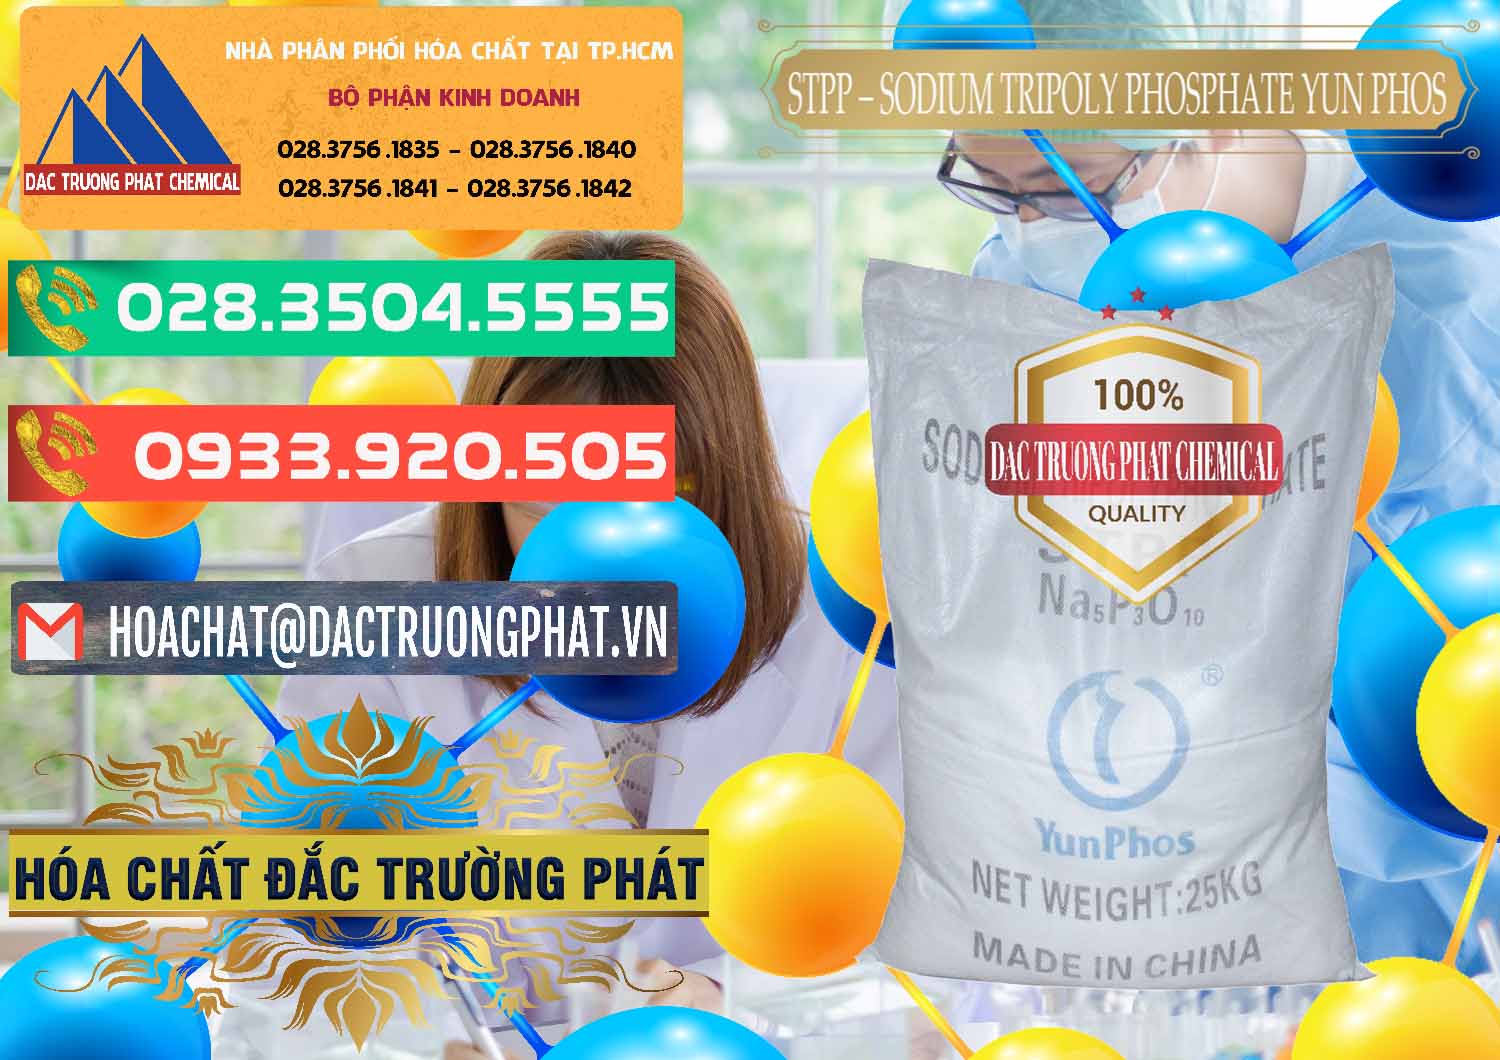 Nhà cung cấp _ bán Sodium Tripoly Phosphate - STPP Yun Phos Trung Quốc China - 0153 - Cty bán & phân phối hóa chất tại TP.HCM - congtyhoachat.com.vn